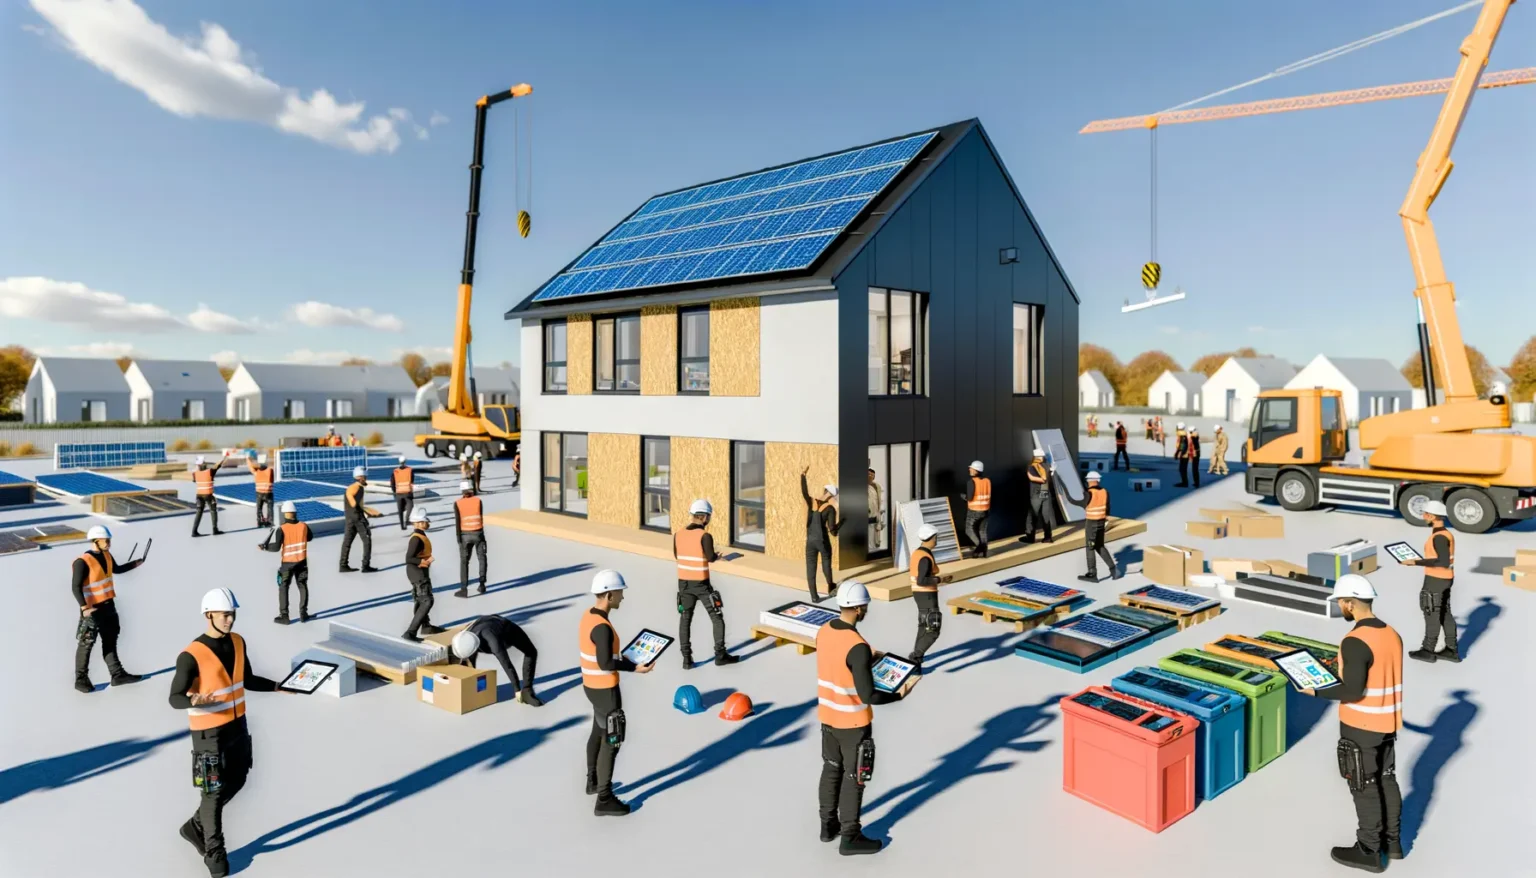 Eine lebhafte Baustelle mit Arbeitern, die aktiv an der Installation von Solarpaneelen auf einem modernen Haus mit schrägem Dach arbeiten, während verschiedene Baugeräte und -materialien sichtbar sind, unter einem klaren blauen Himmel. Ein Kran hebt Materialien an, während im Hintergrund weitere Häuser erkennbar sind.